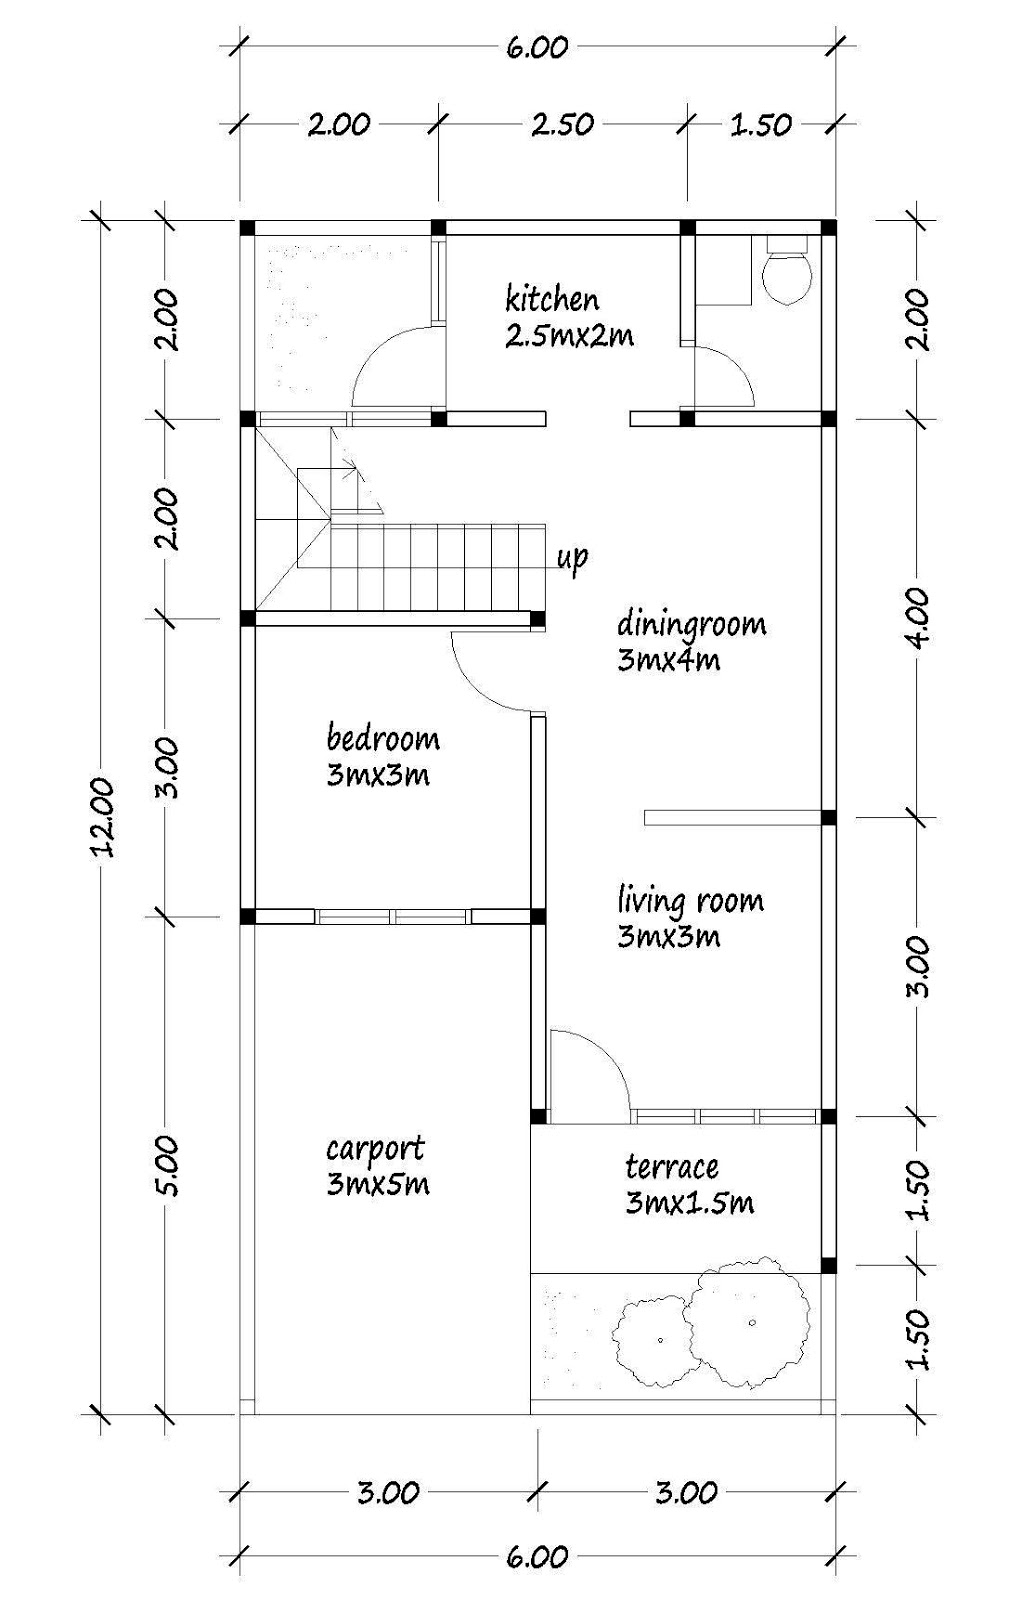 Floor Plans With Dimensions In Meters